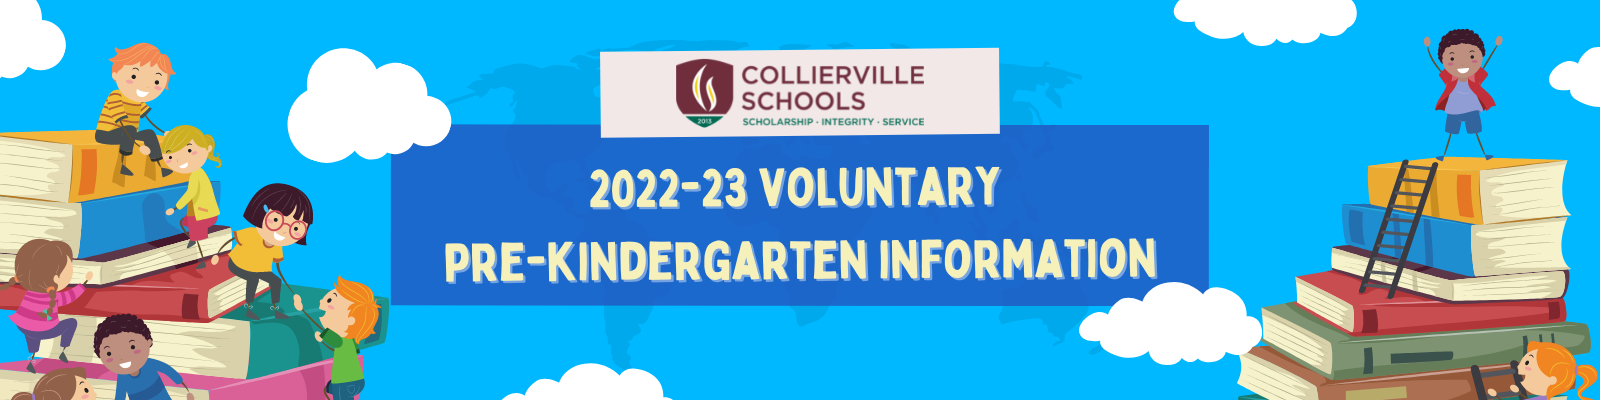 Voluntary Pre-Kindergarten Information